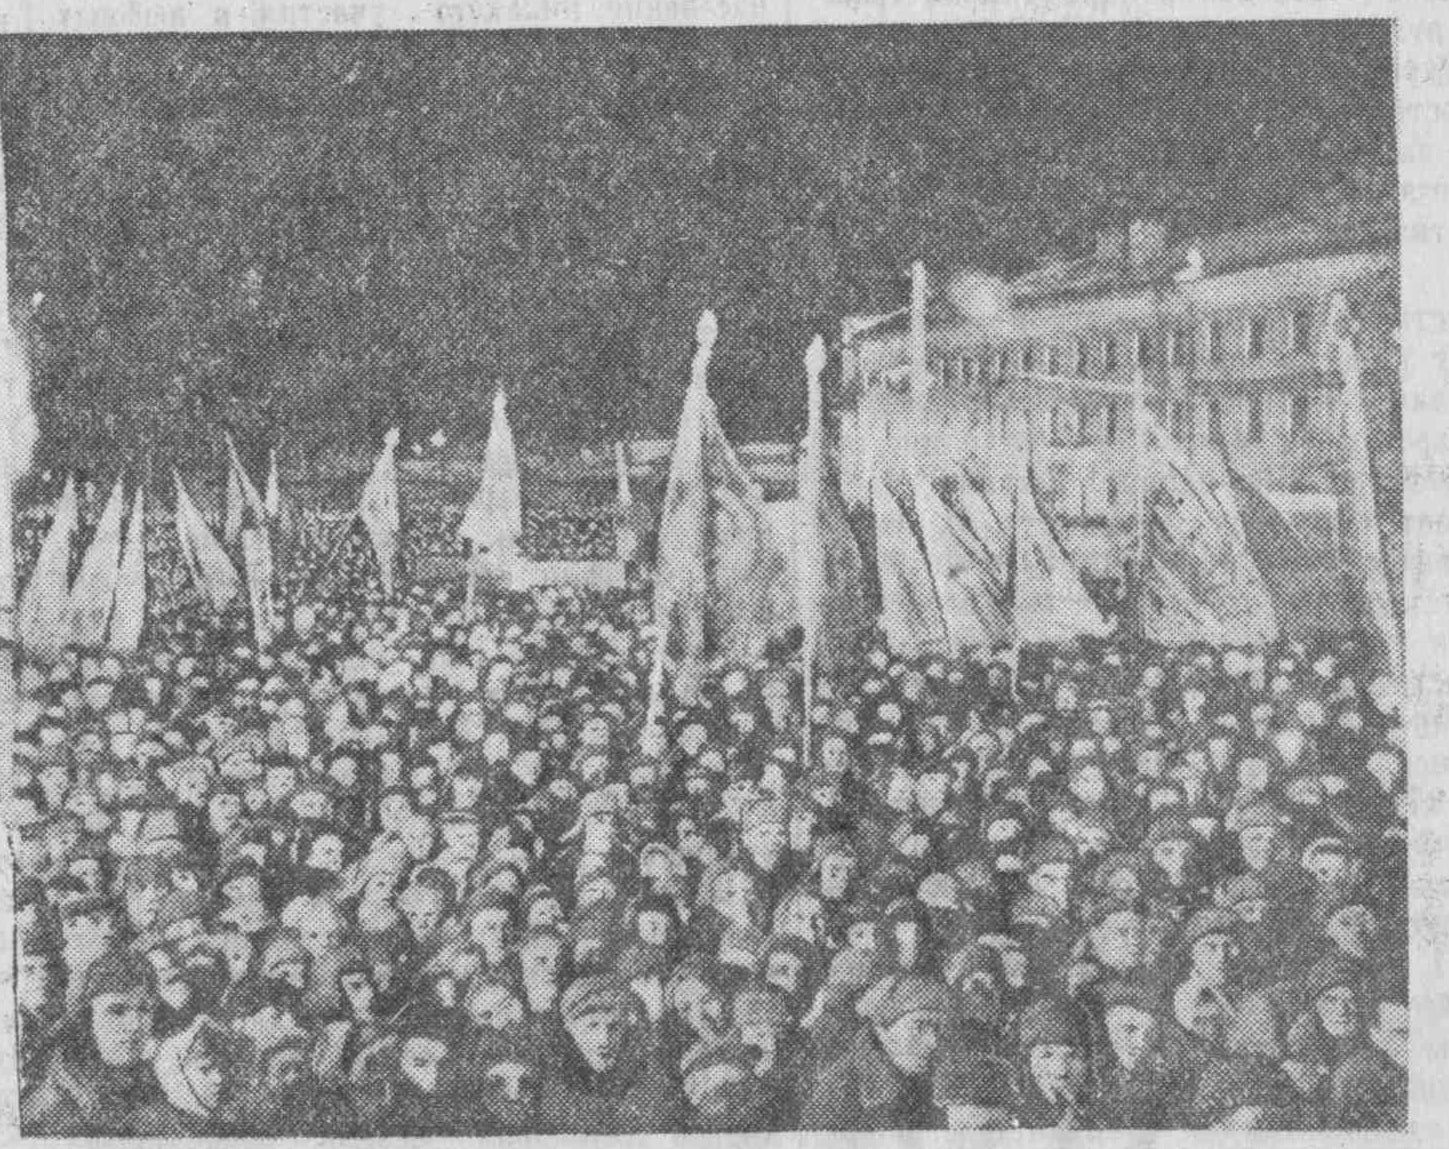 Физкультурная-ФОТО-03-ВКа-1950-12-16-митинг на Физкультурной